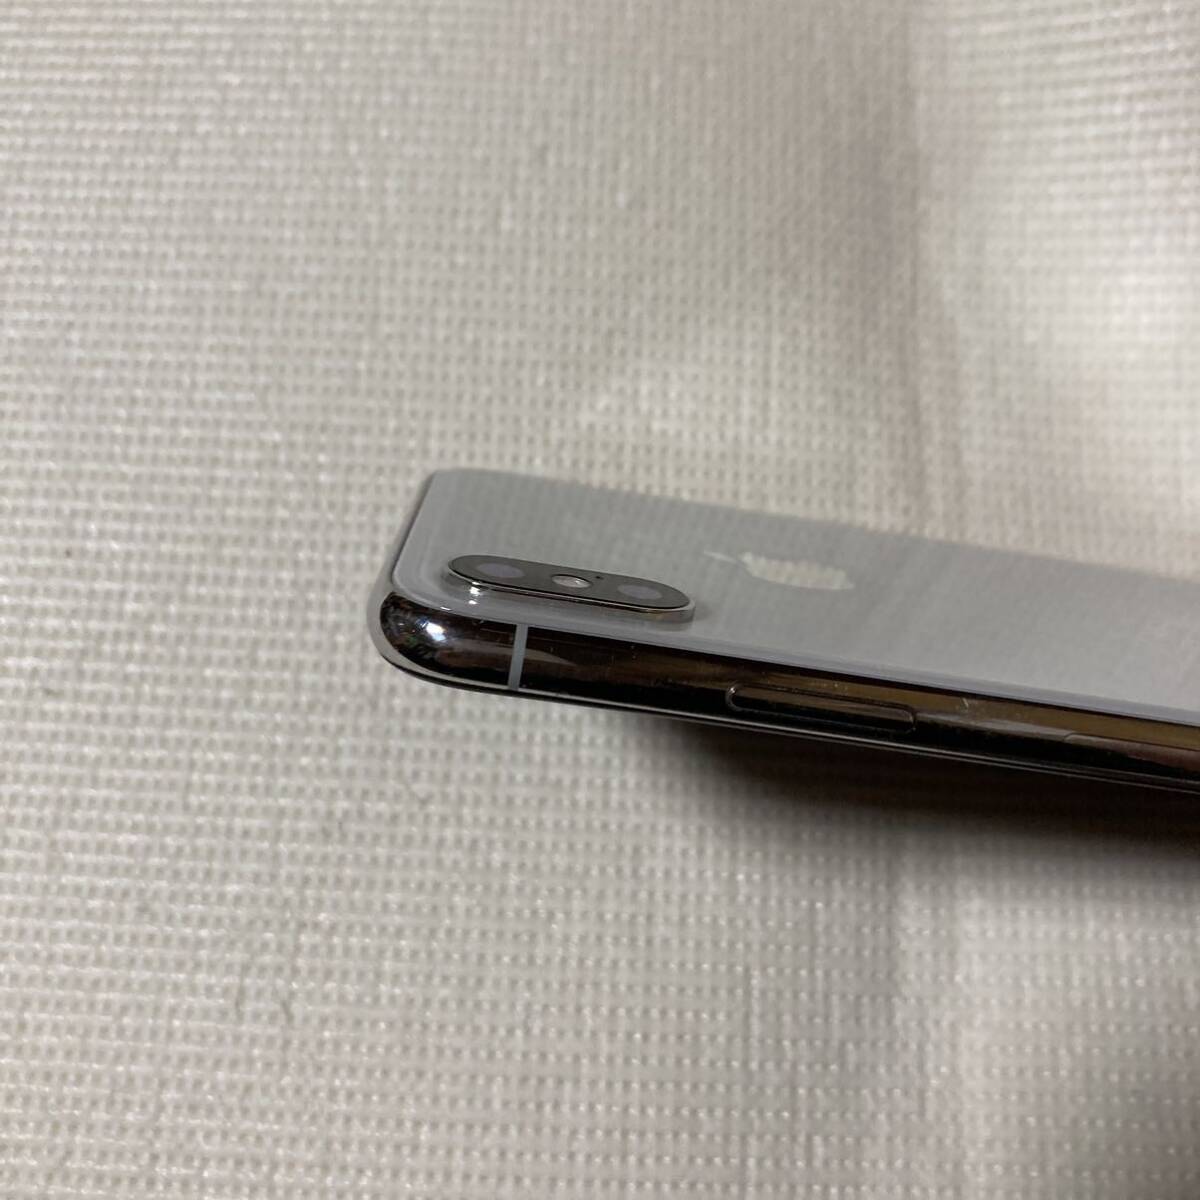 送料無料 SIMフリー iPhoneX 64GB シルバー バッテリー最大容量100% SIMロック解除済 中古品の画像7